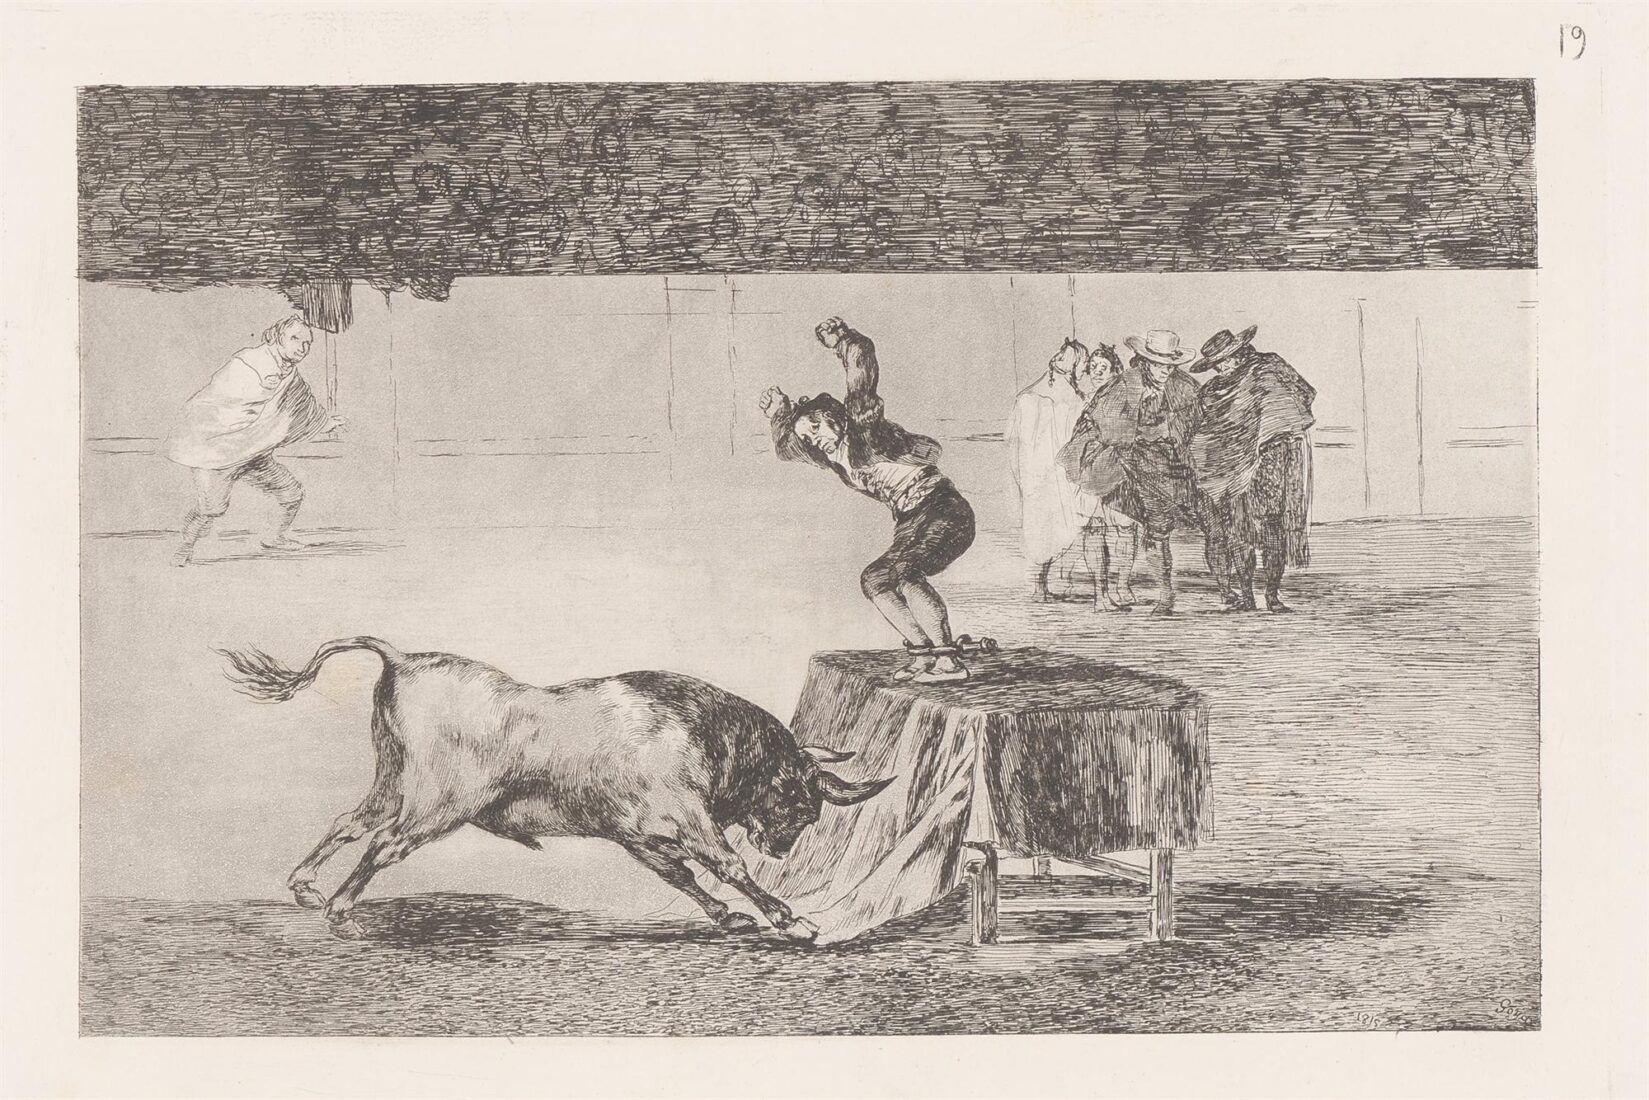 Άλλη τρέλλα του στην ίδια αρένα - Goya y Lucientes Francisco